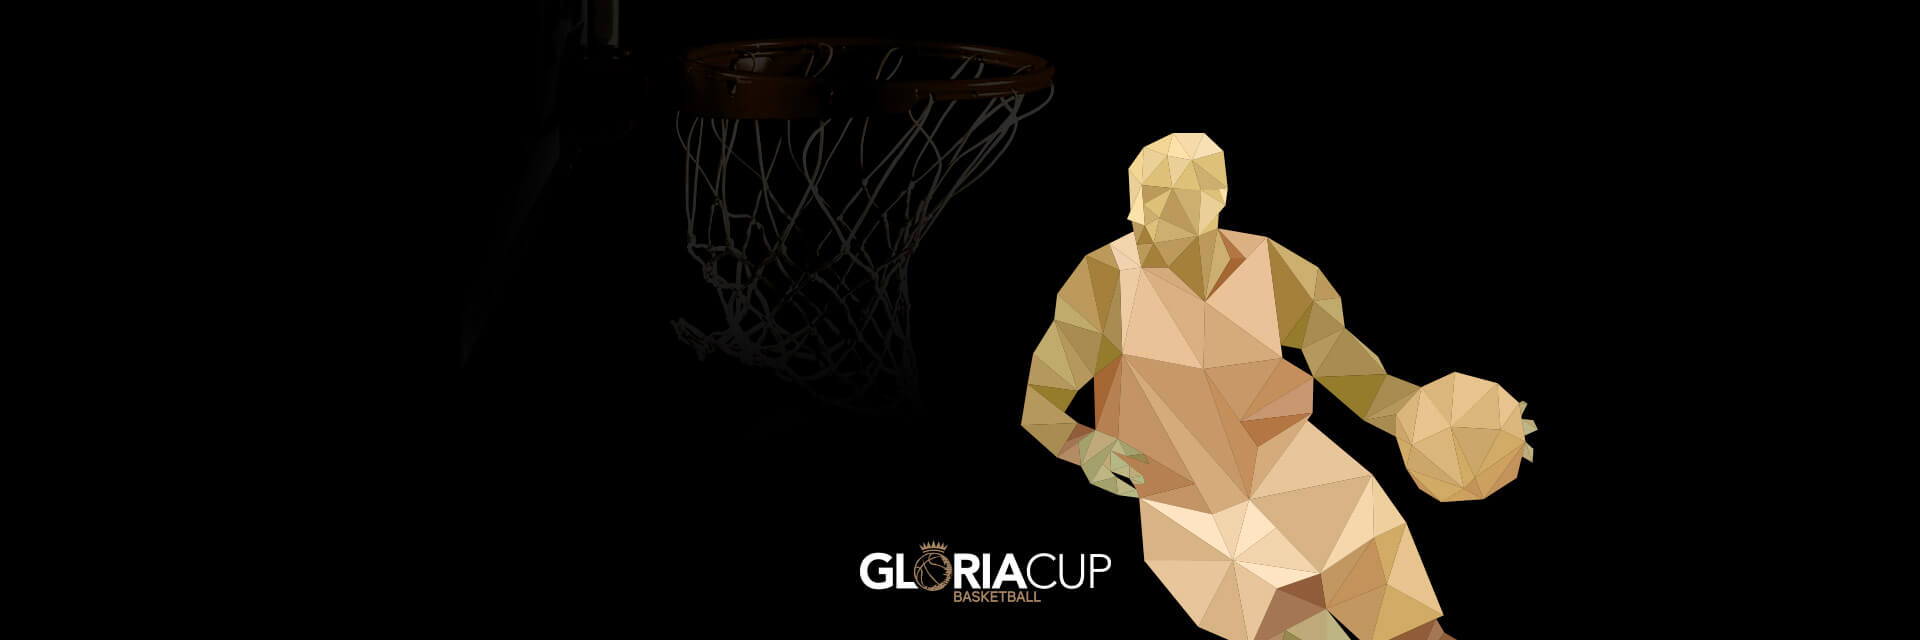 GC2018-BasketballDesktop